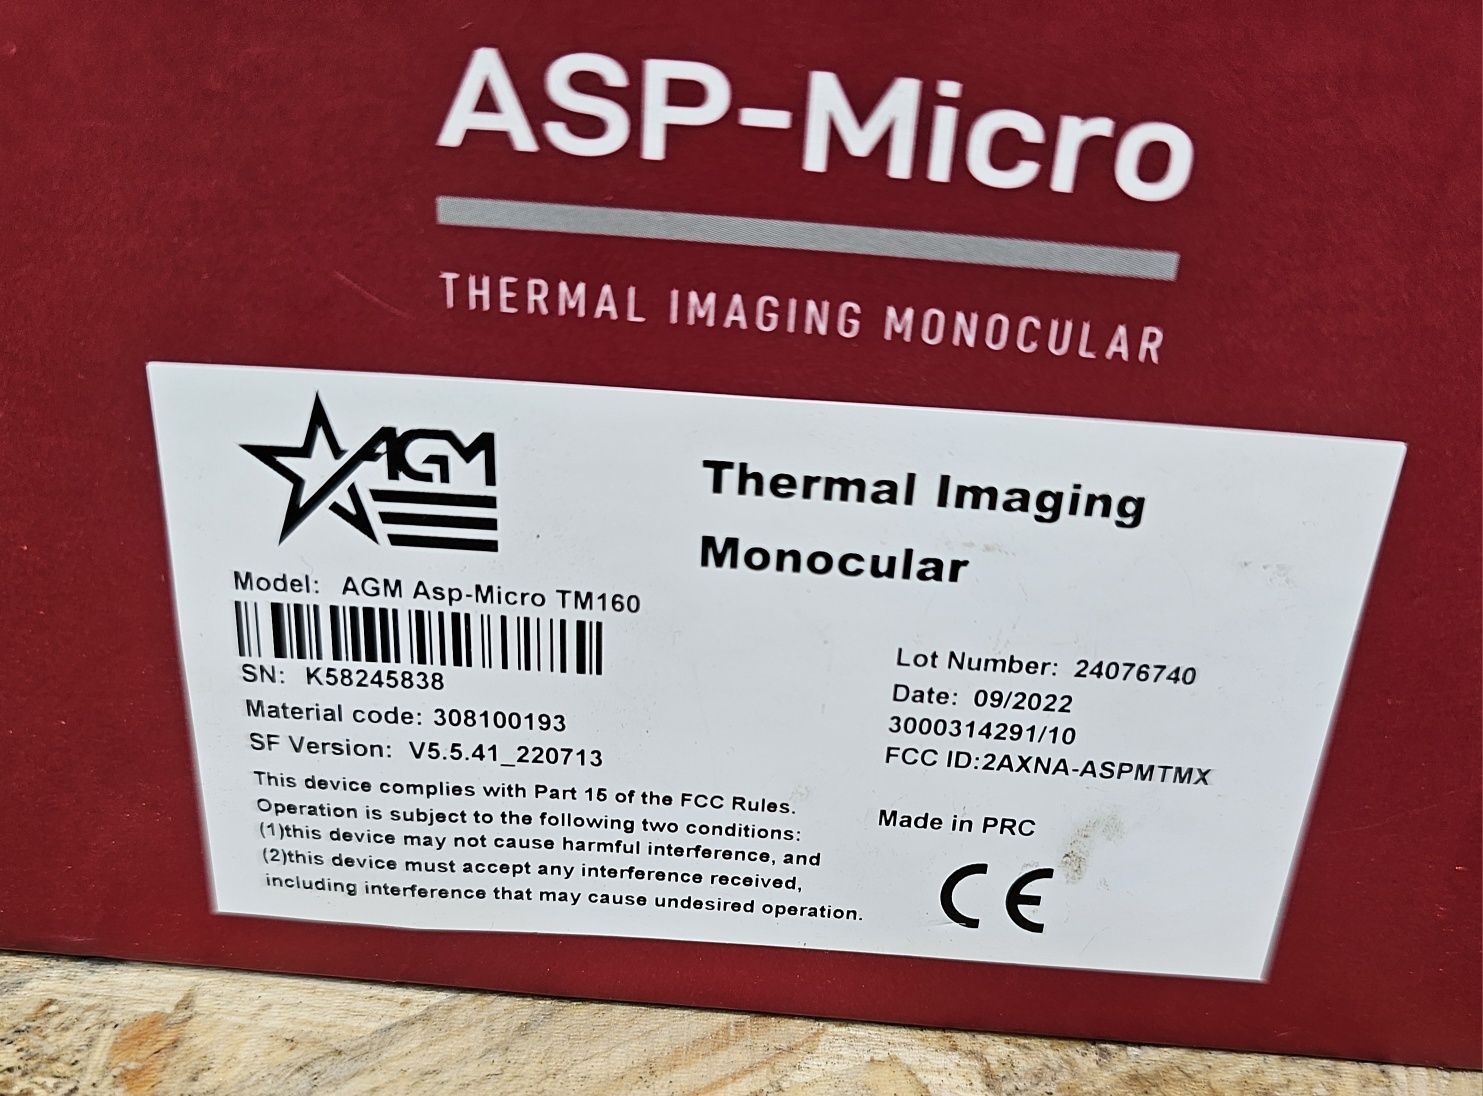 тепловизор в идеальном состоянии - ASP-MICRO TM160